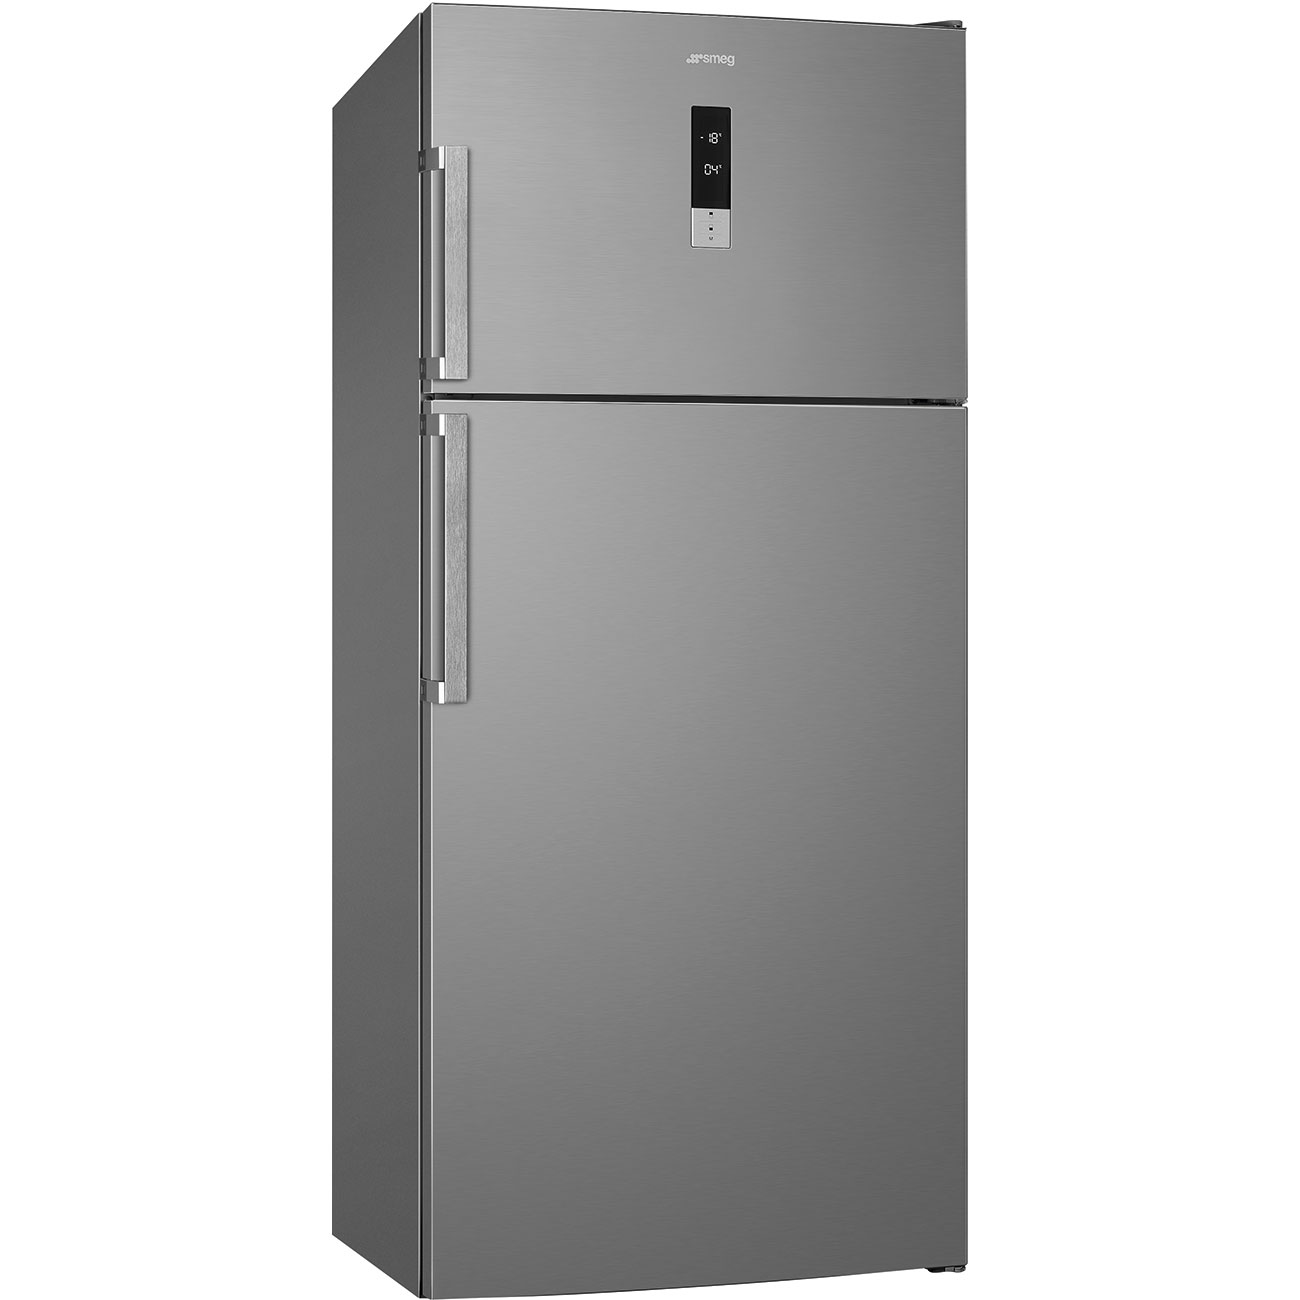 Double Door Free standing refrigerator - Smeg_1